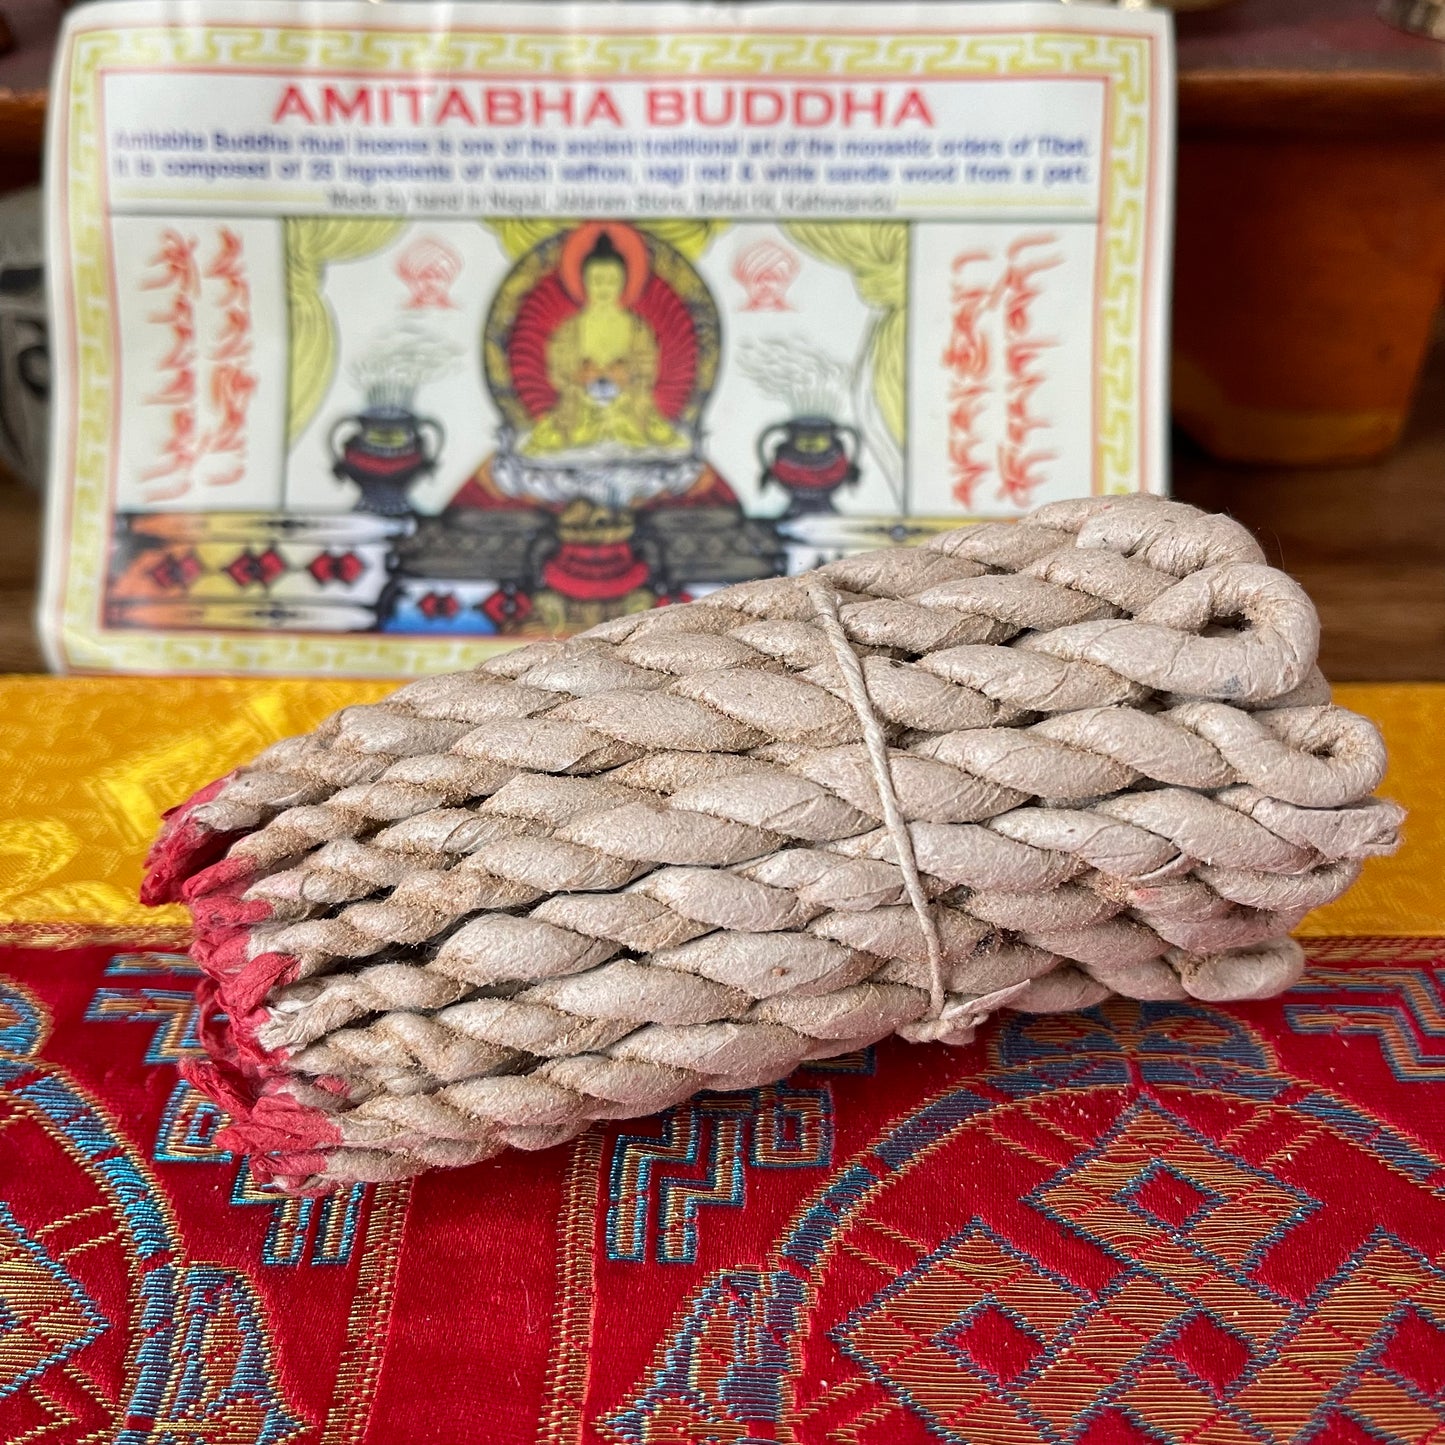 Amitabha Buddha Rope Incense | Tibetan Buddhist Rope Incense